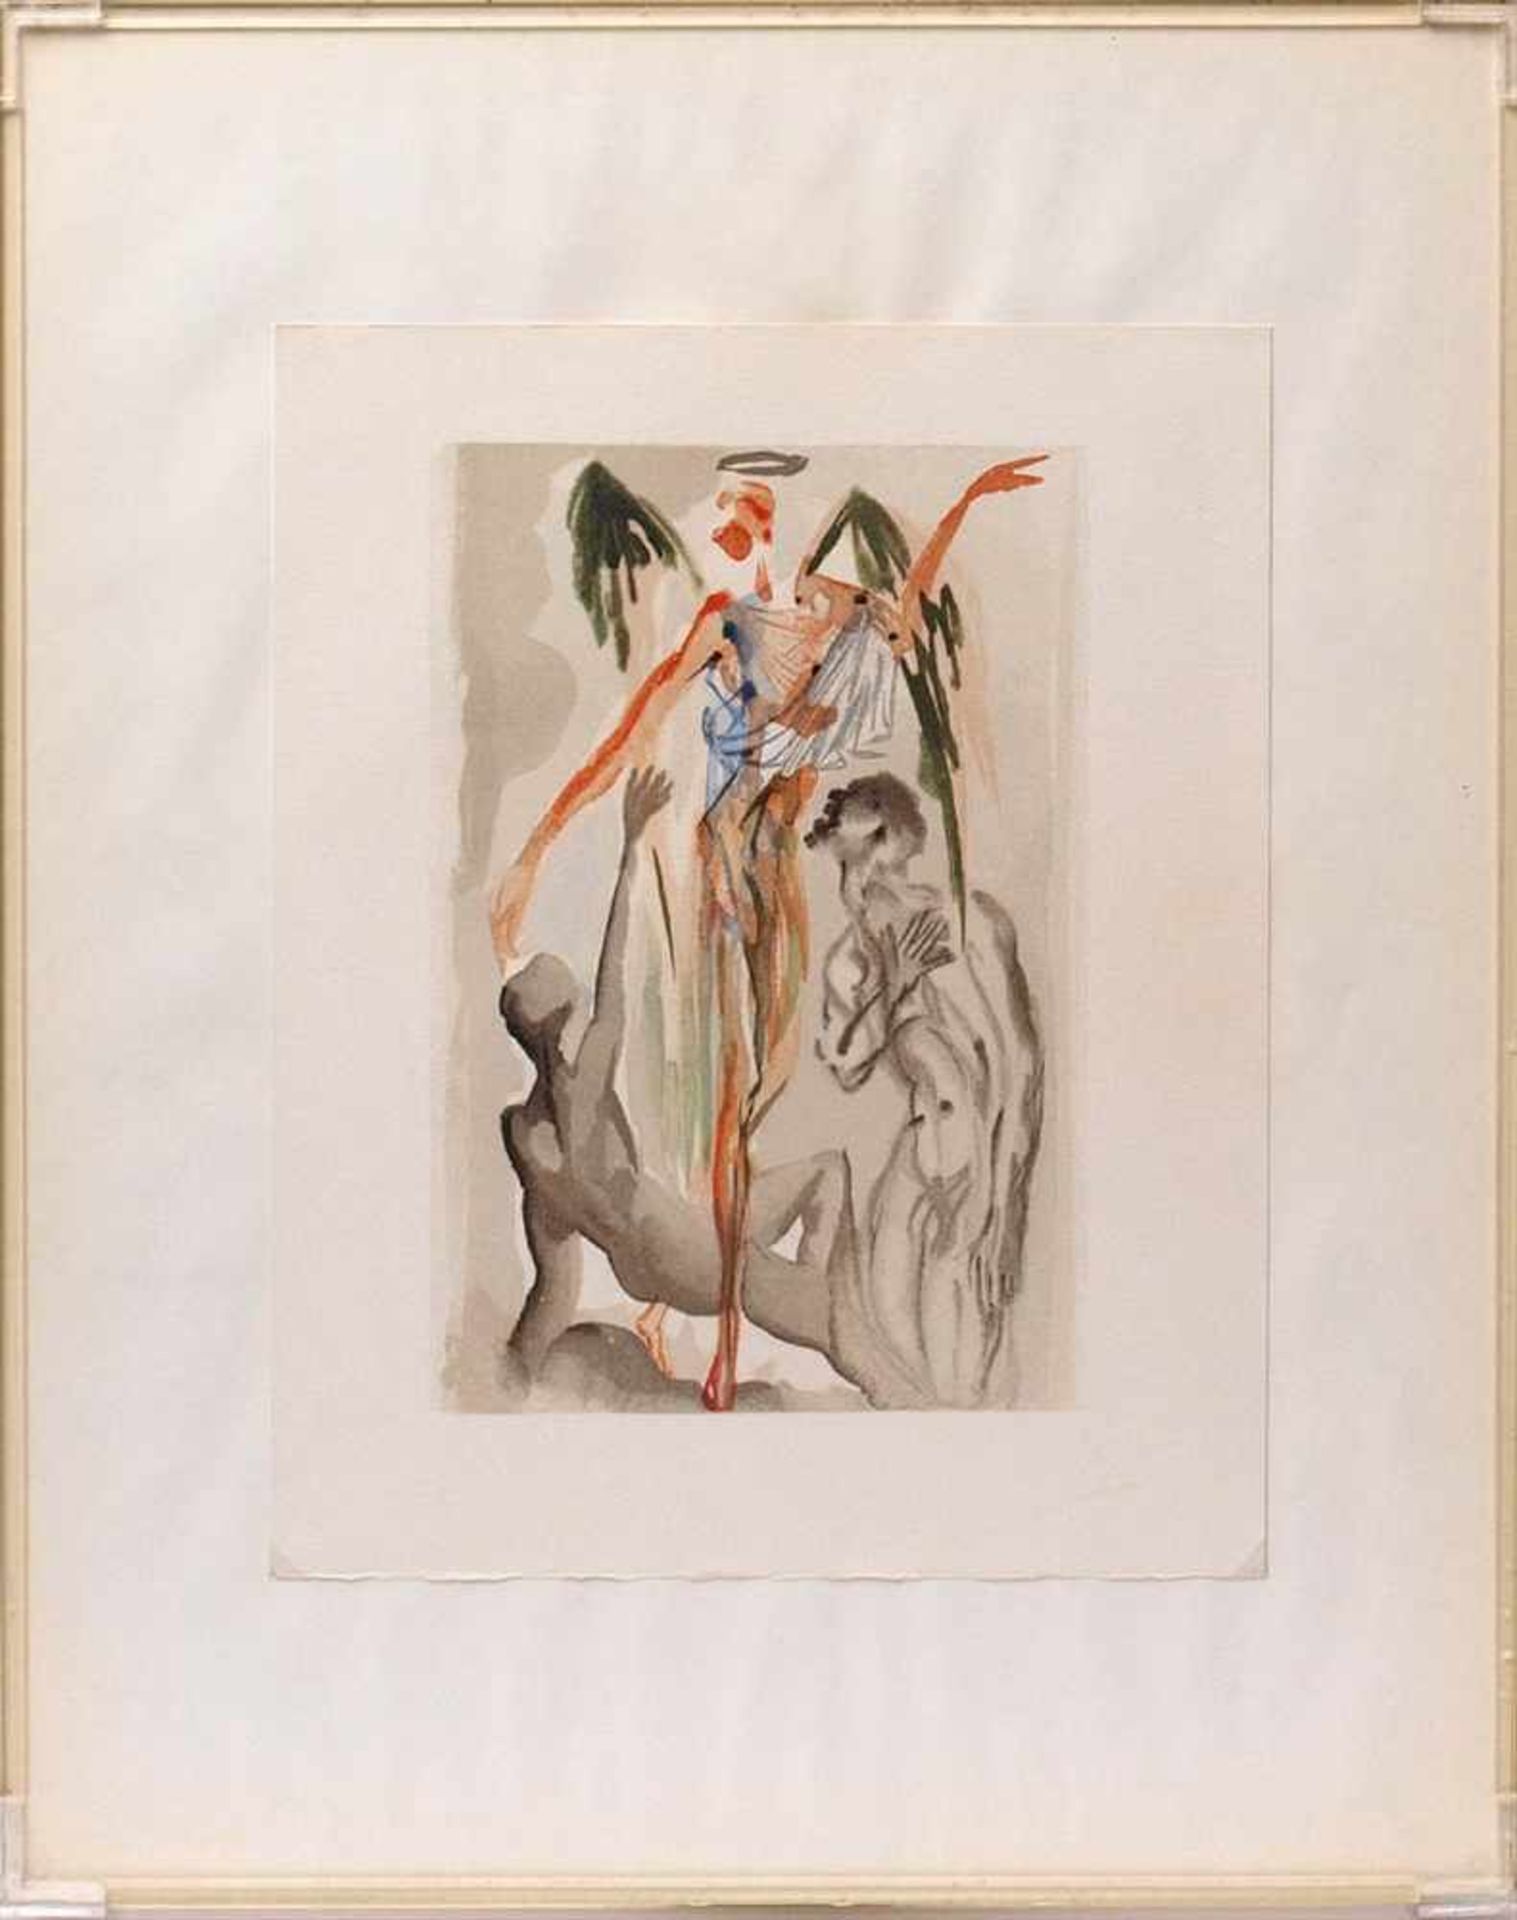 Dalí, Salvador, 1904 - 1989Graphik "Fegefeuer 32" aus "Das irdische Paradies" auf Bütten. Blattgröße